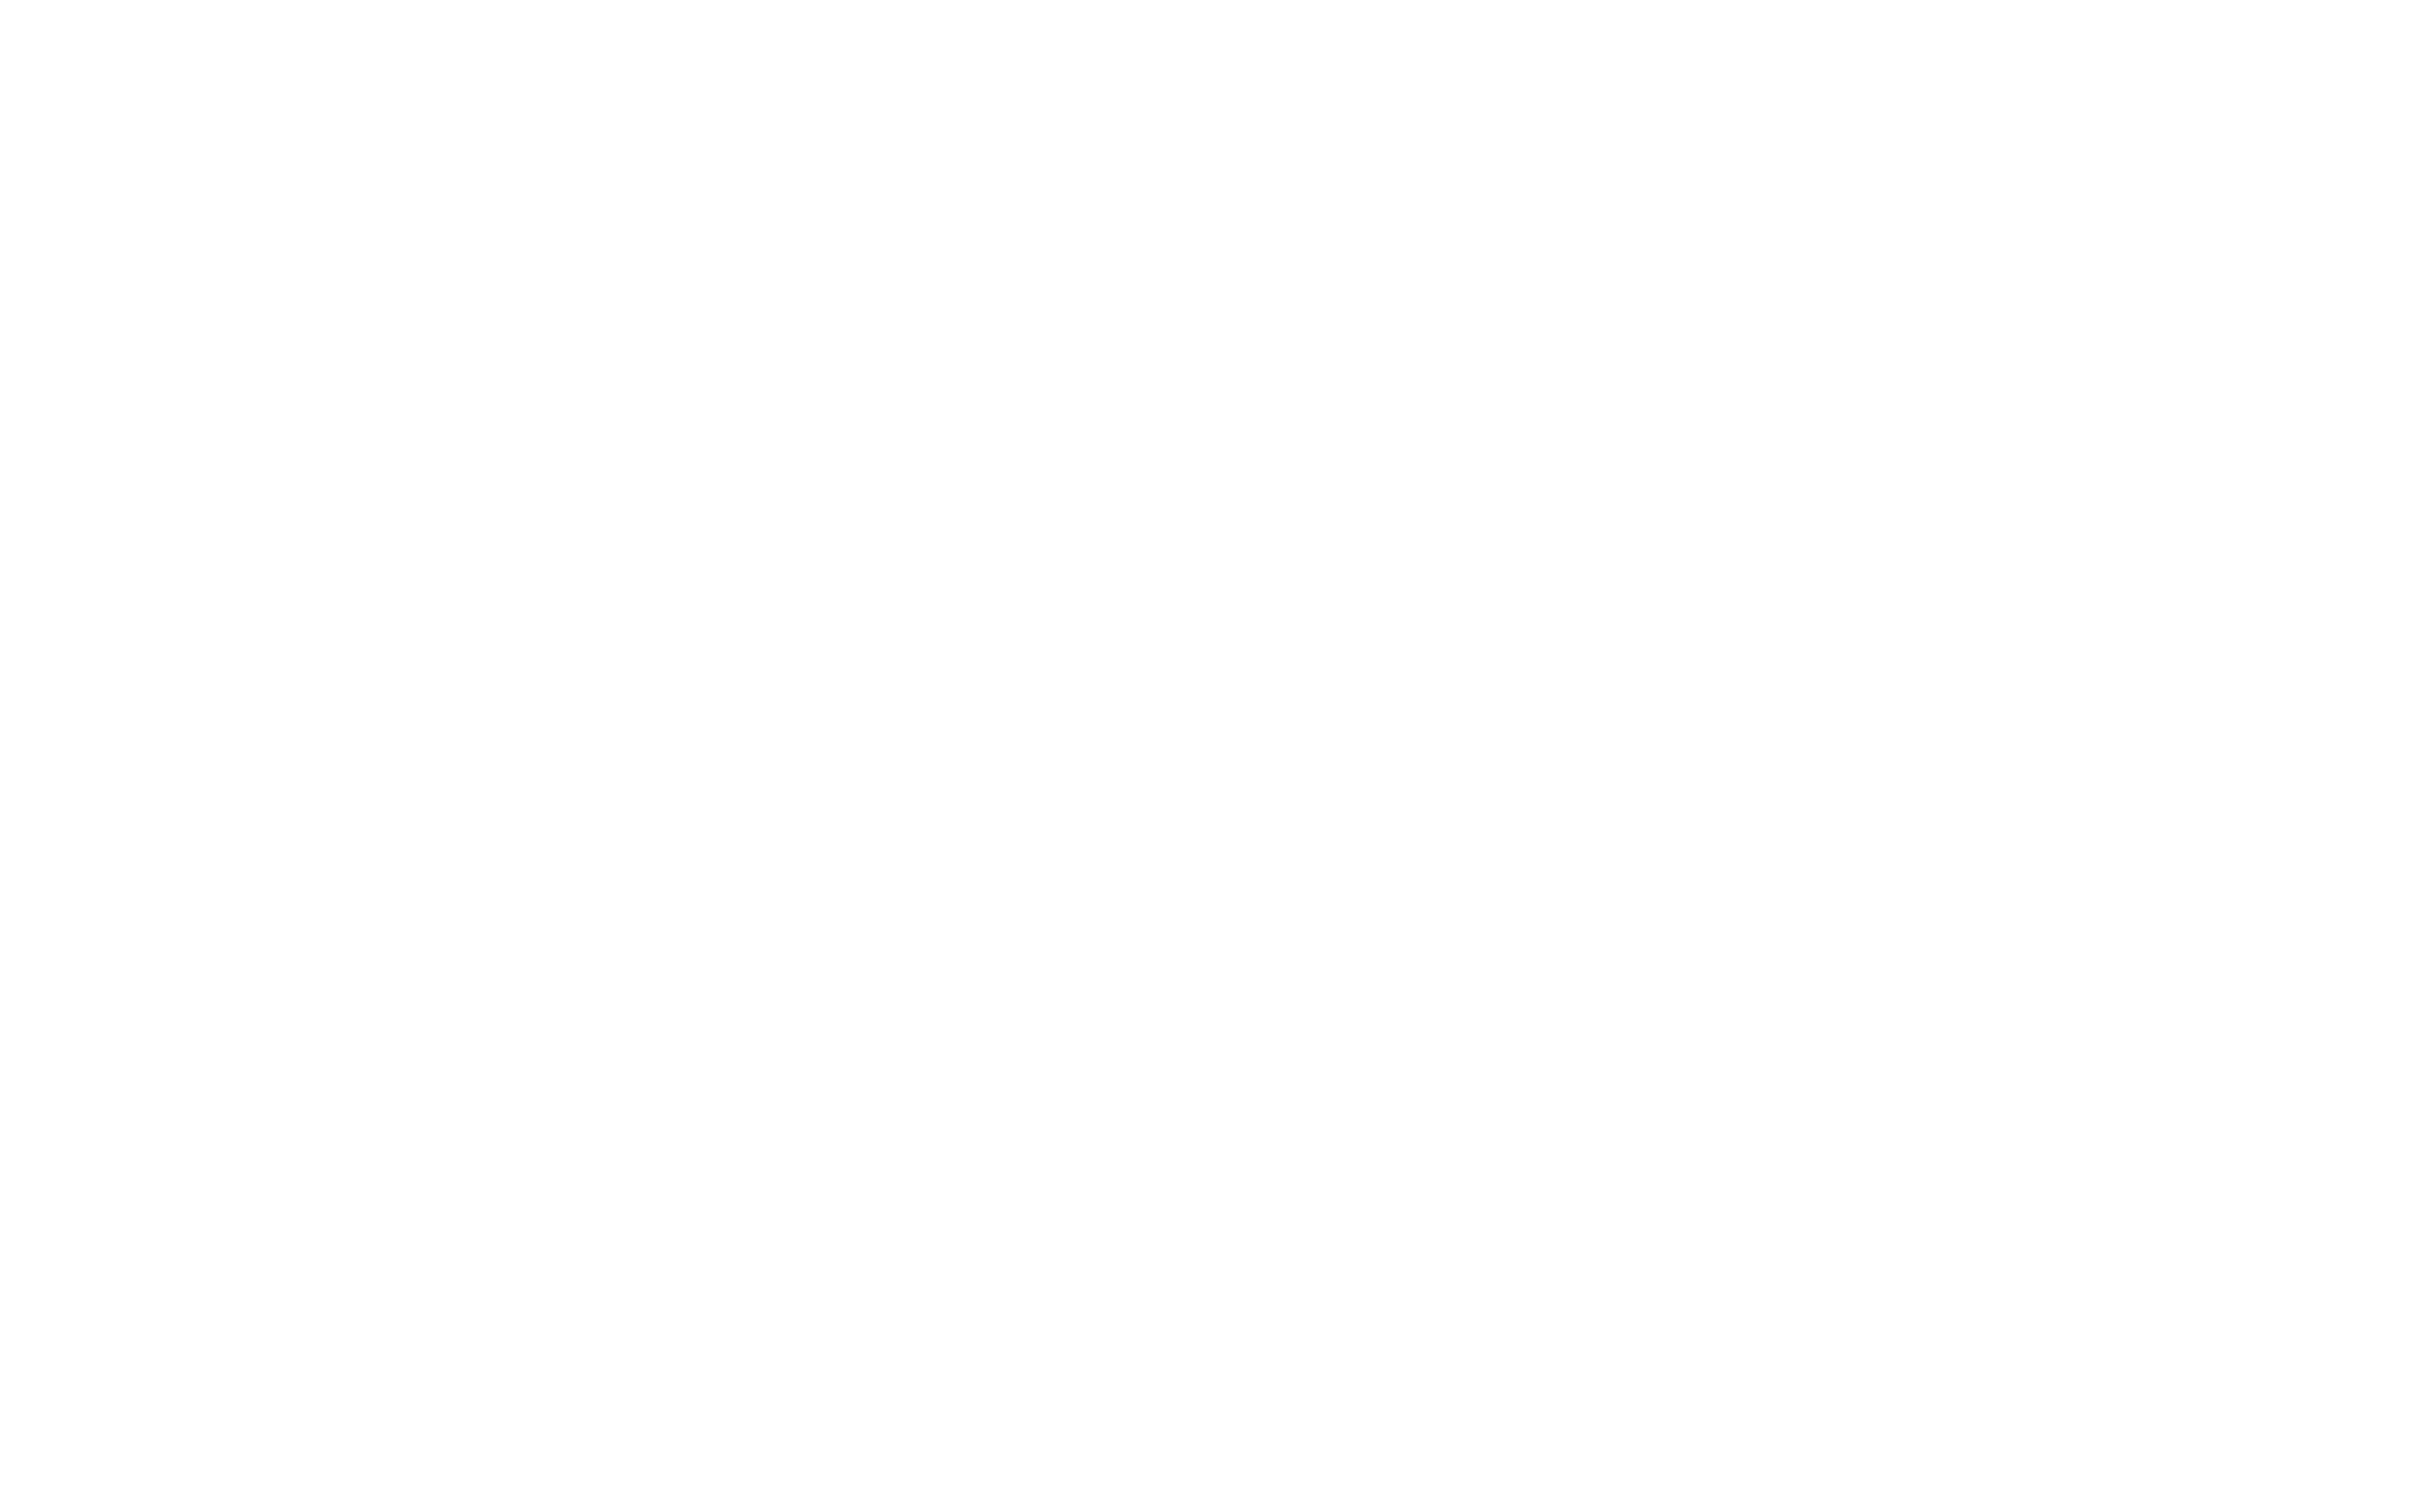 Tooperang Beef Cattle